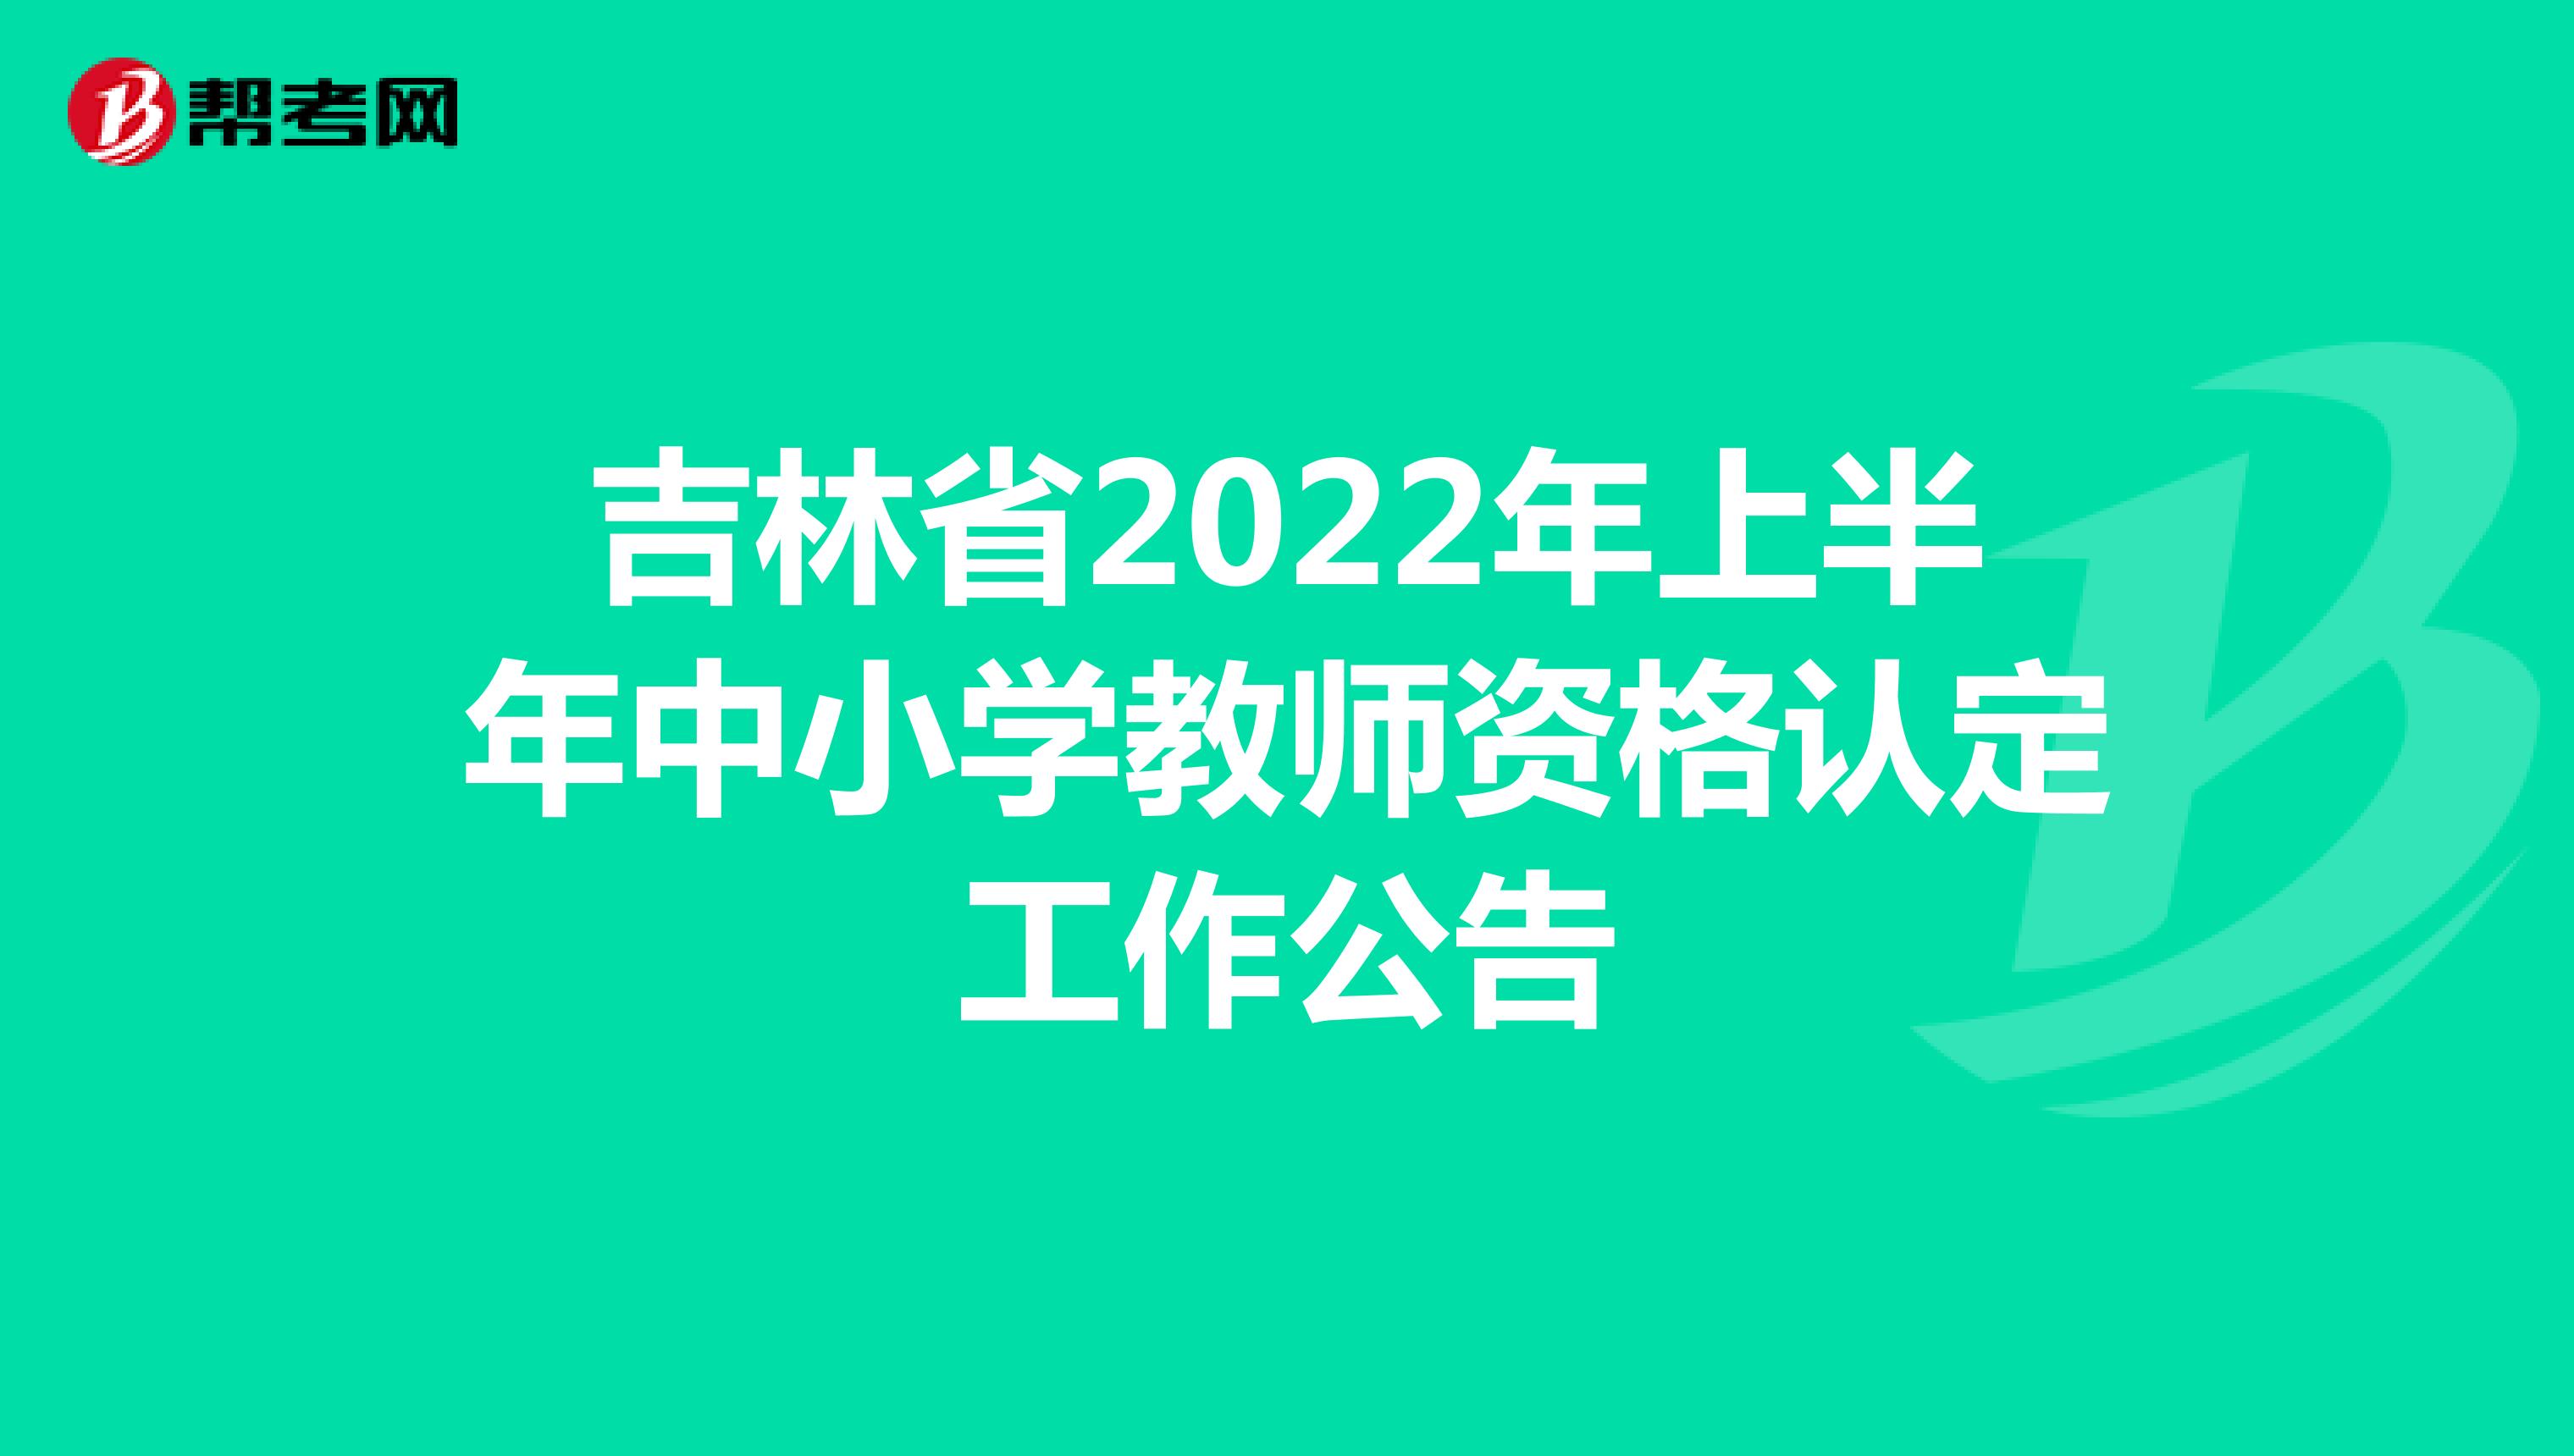 吉林省2022年上半年中小学教师资格认定工作公告